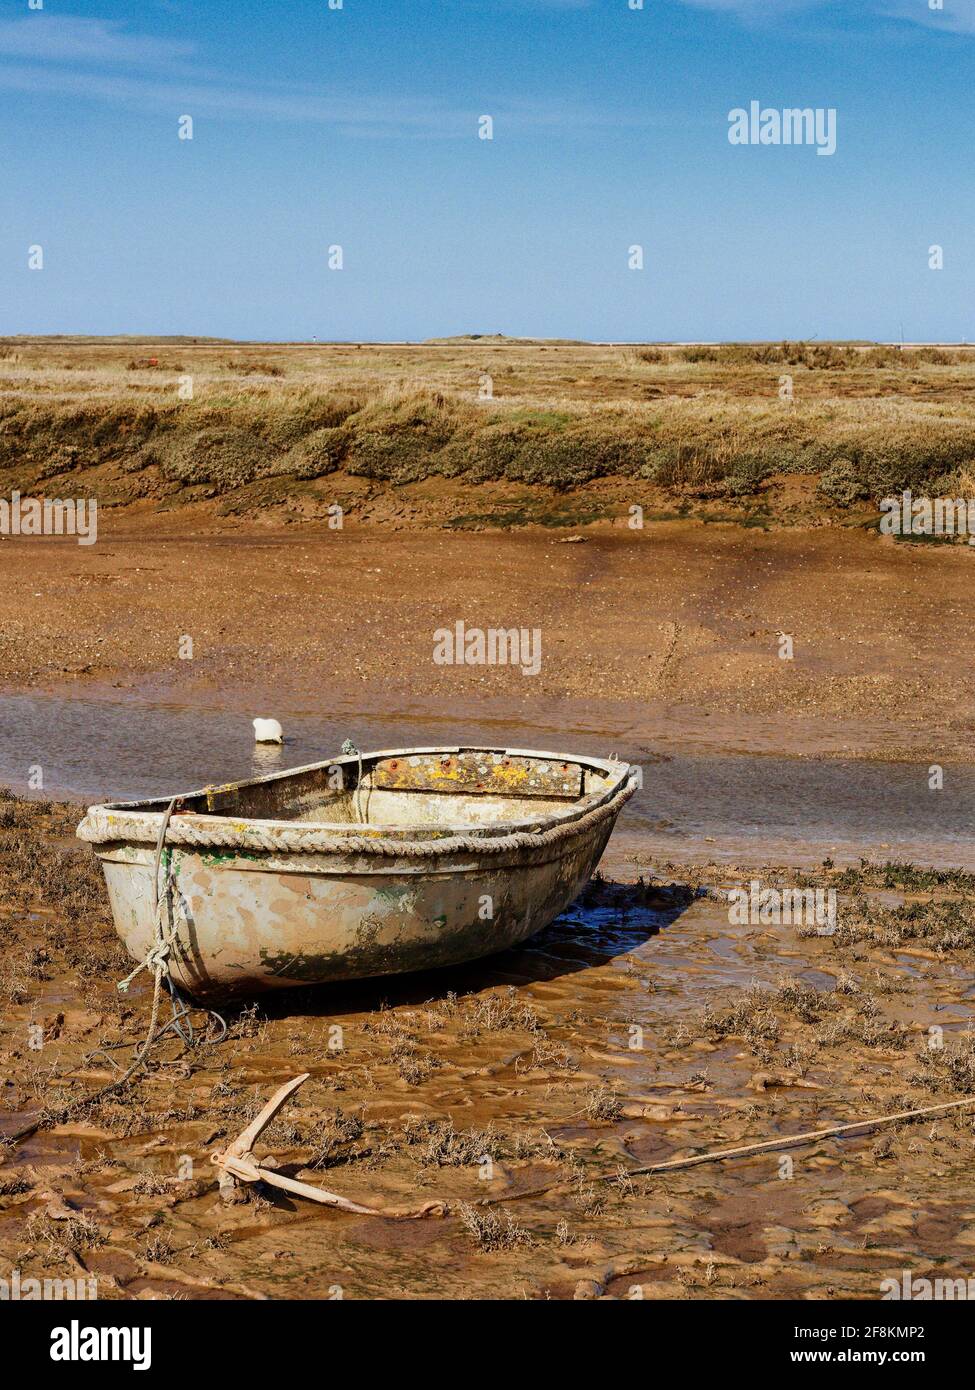 La bassa marea di Morston sulla costa nord del Noroflk lascia le barche bloccate sul fango appiccicoso della palude del sale. Foto Stock